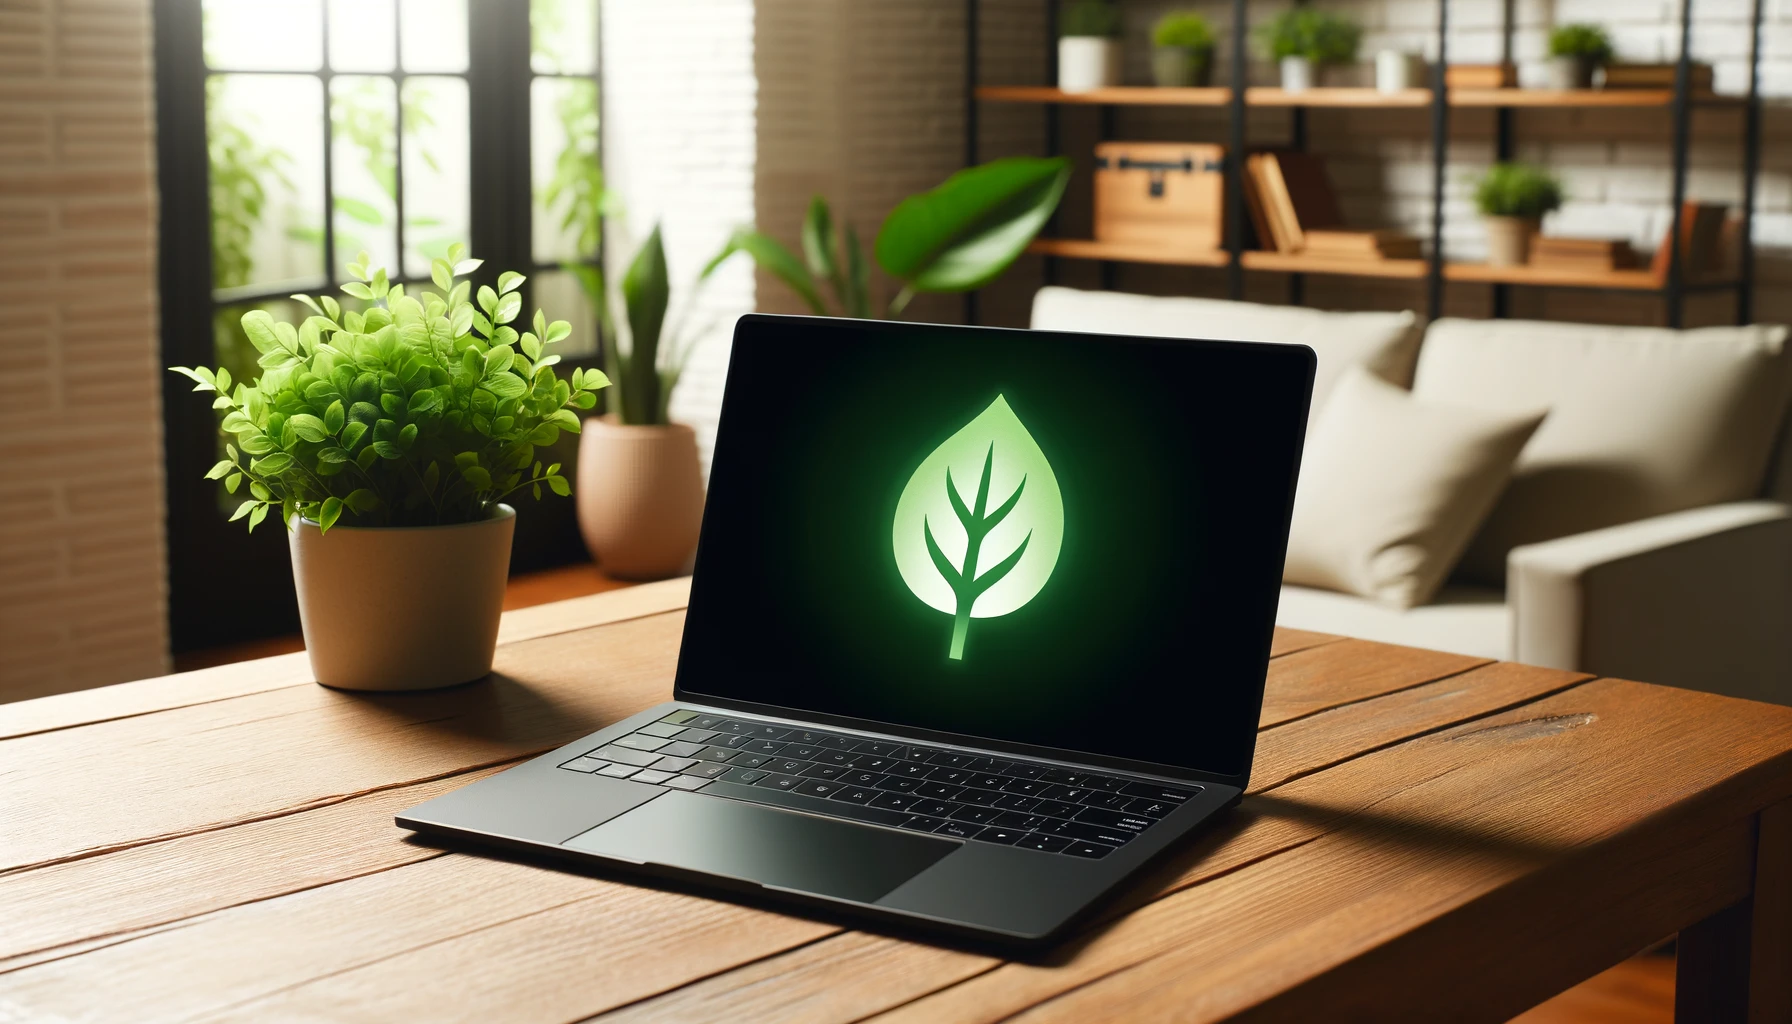 Une photo representant un ordinateur portable noir reconditionne comme solution ecologique. Lordinateur portable est place sur un bureau en bois avec une plante en arriere plan